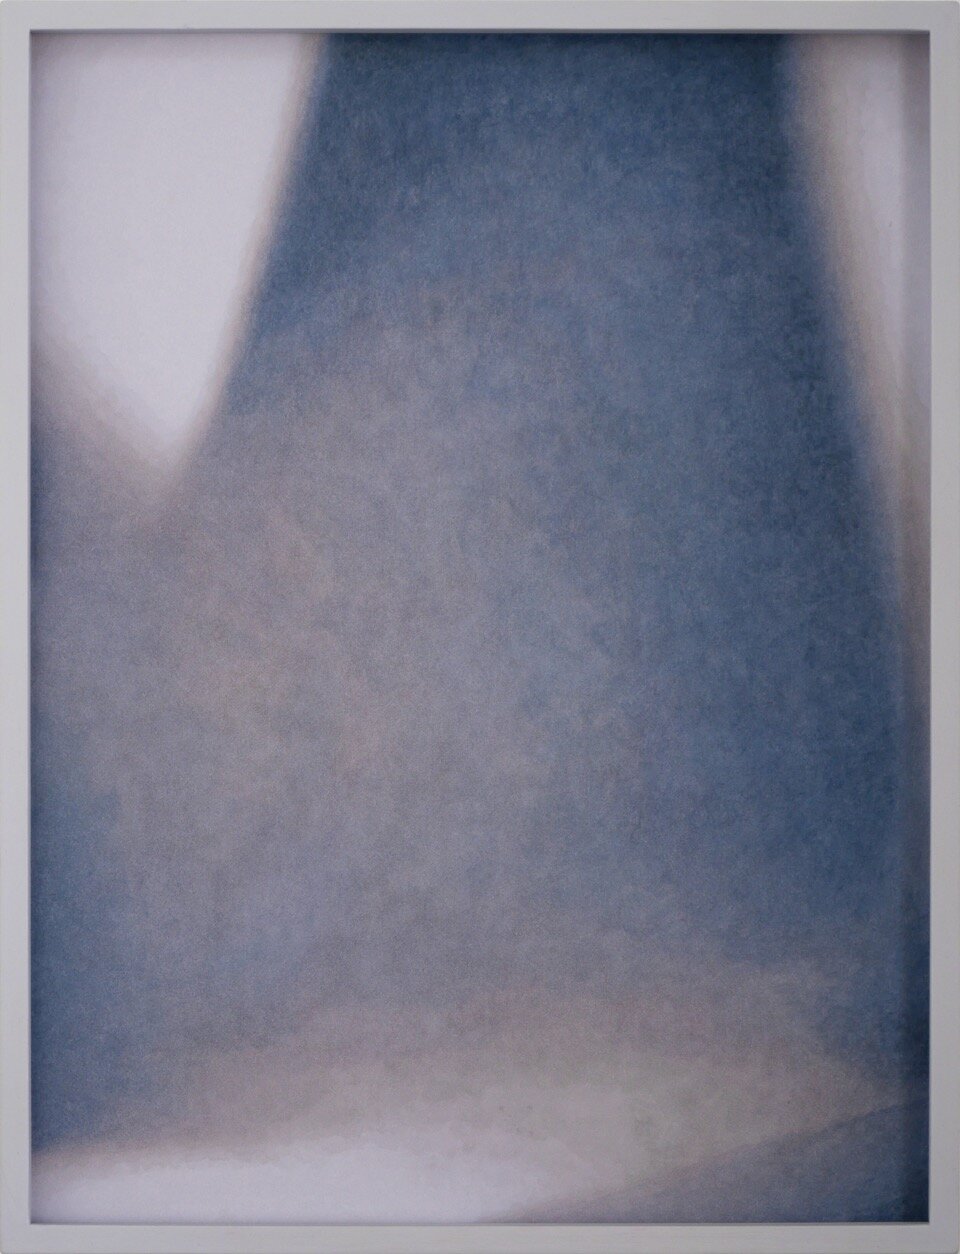  “Ohne Titel”, 2018, Tusche, Aquarell und Kunstharze auf Leinwand; lackierter Rahmen, entspiegeltes Glas (Mirogard von Schott), 42,7 x 32,6 cm 